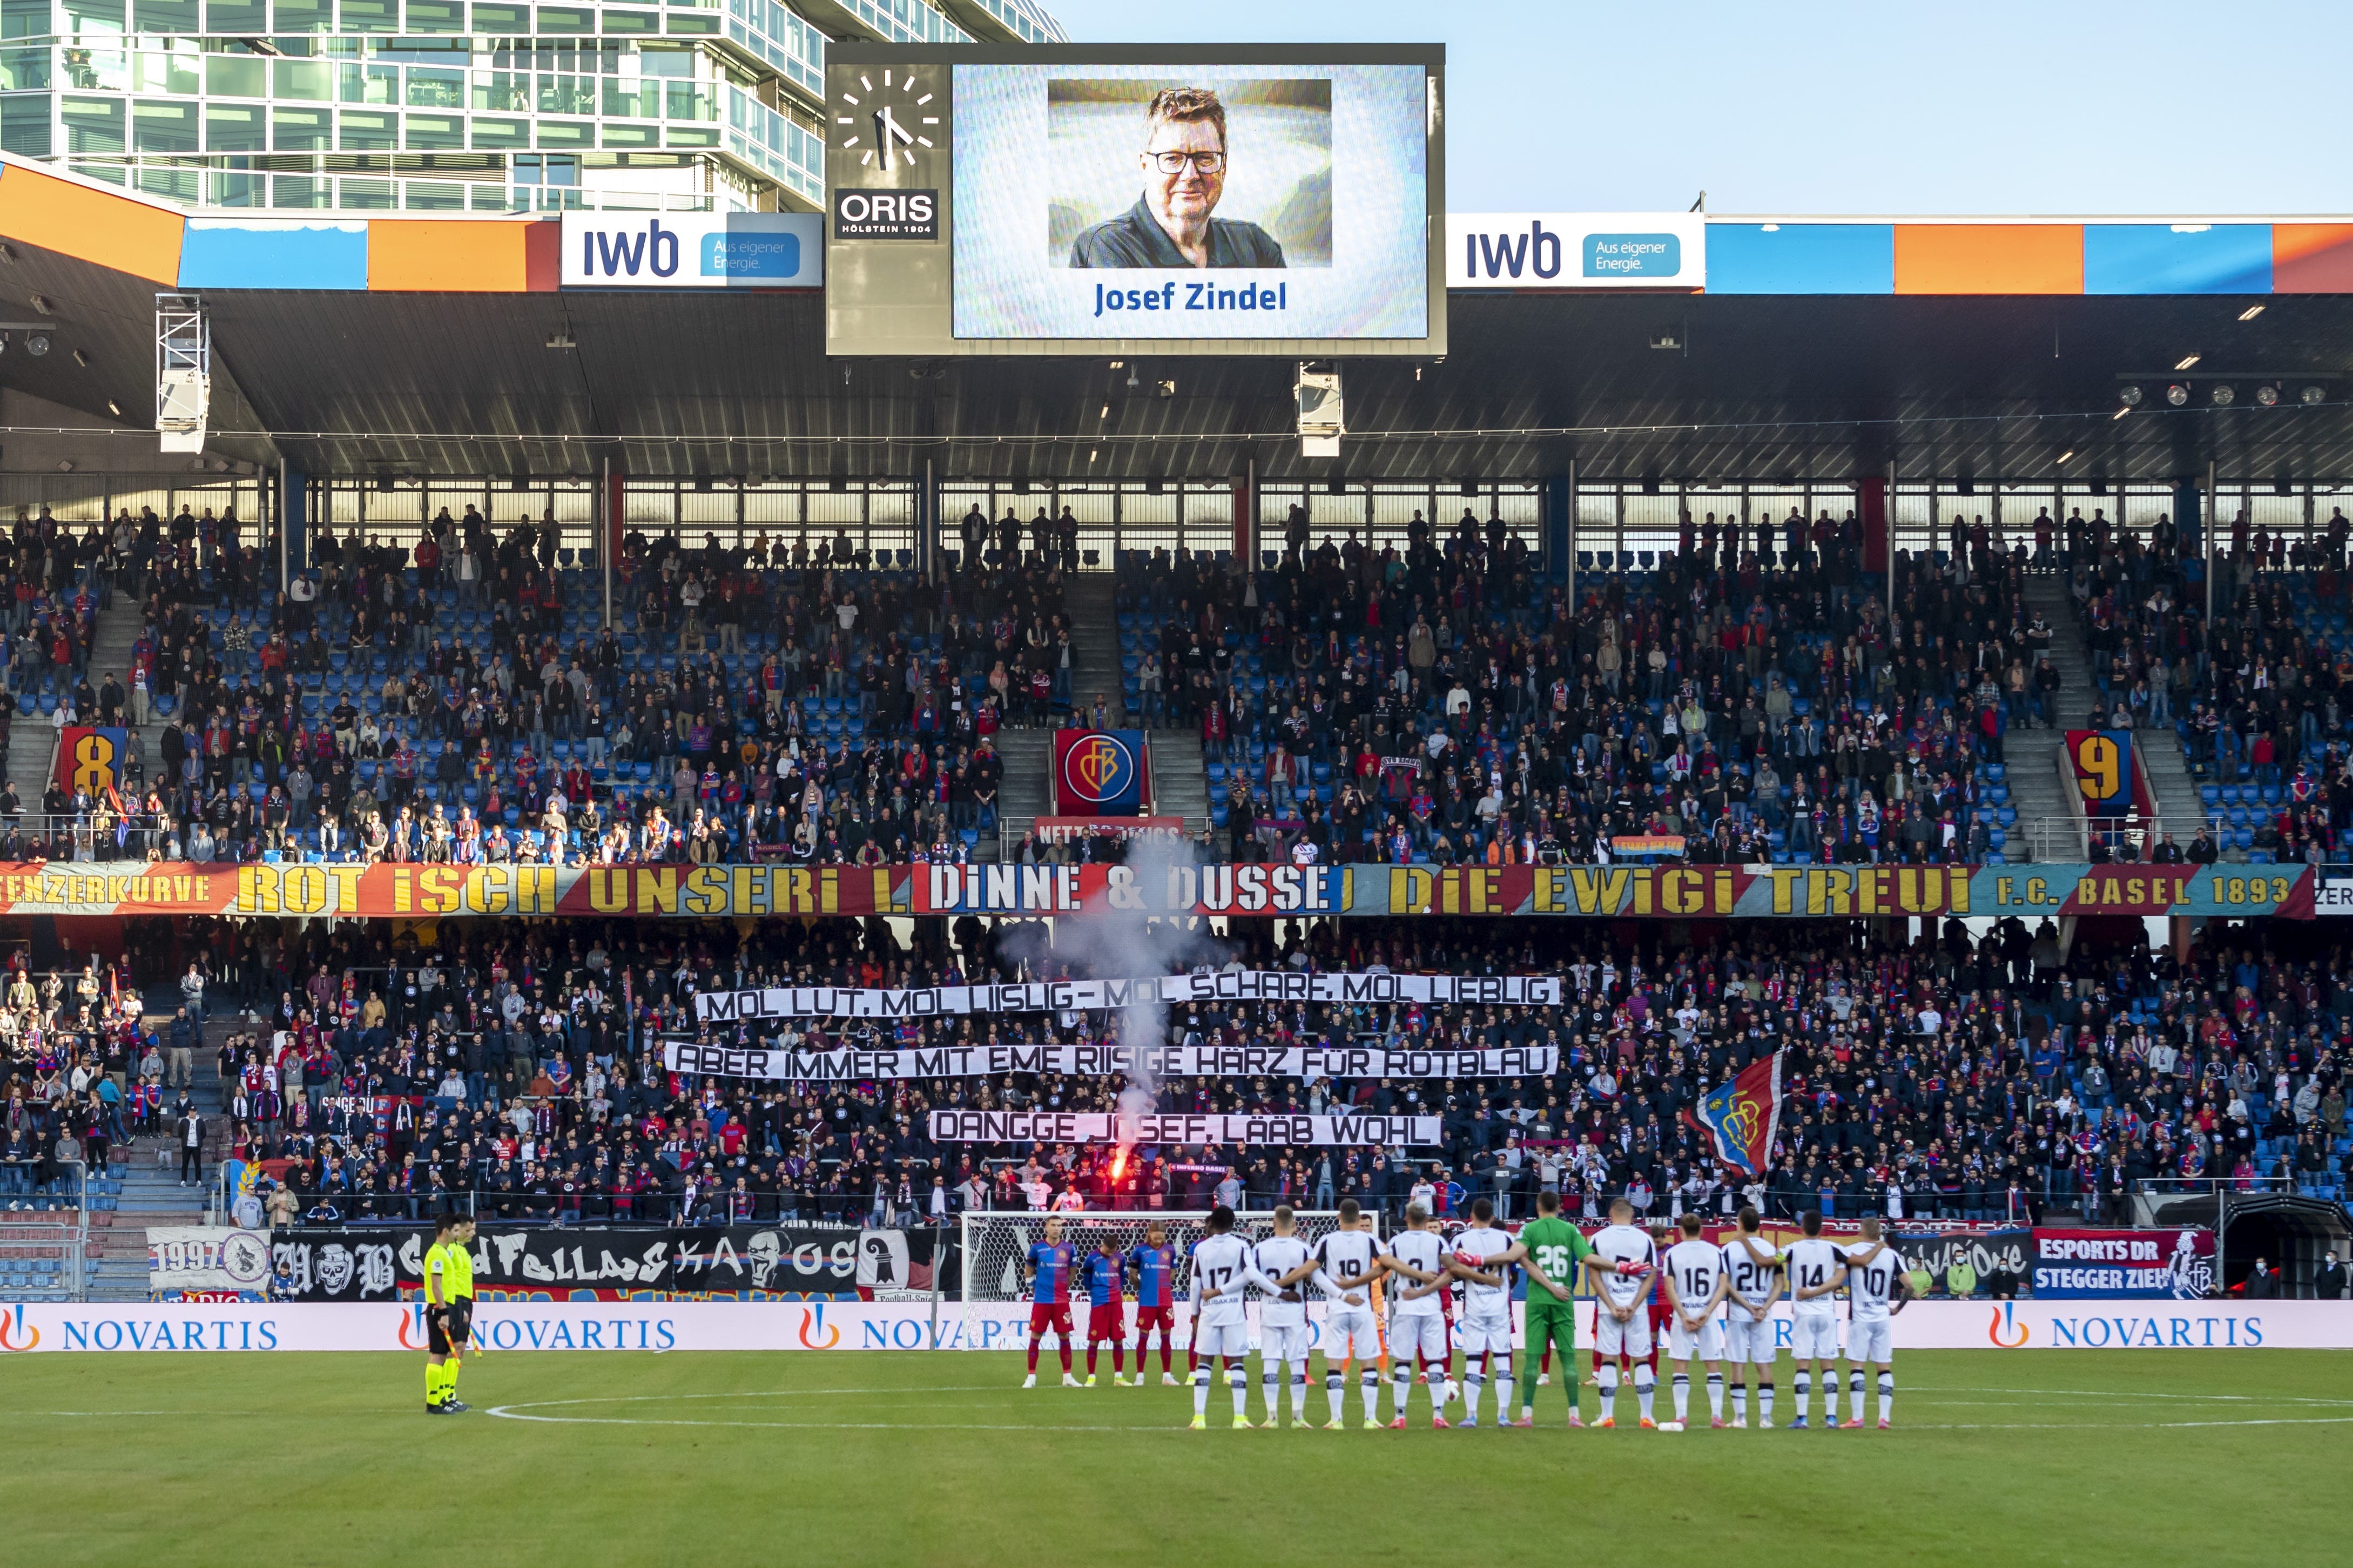 Noch bevor das Spiel beginnt, gibt es eine rührende Schweigeminute für den verstorbenen Josef Zindel.